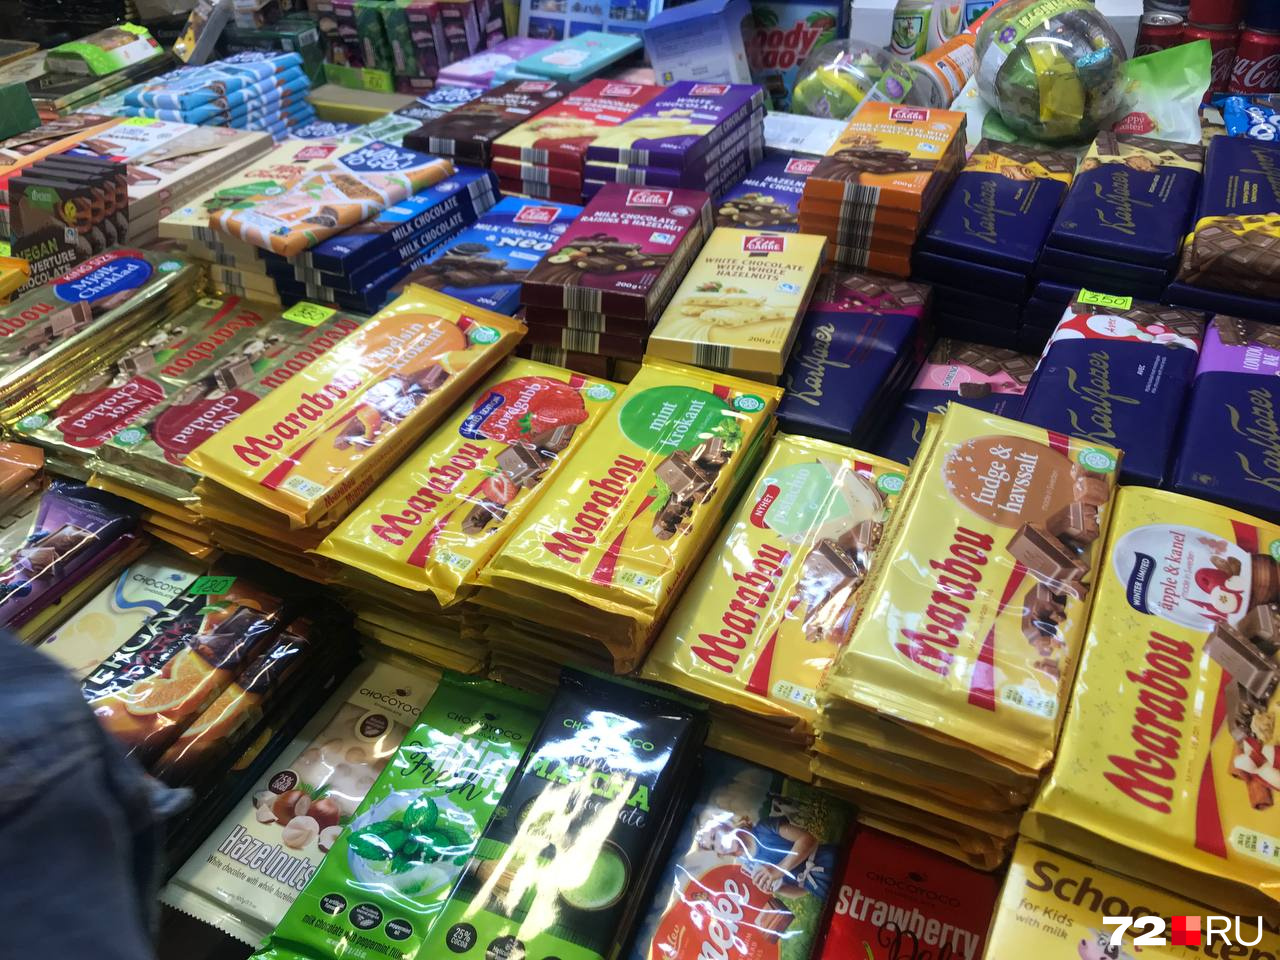 На местном рынке продают товары из Финляндии. Большим спросом пользуются сладости и кофе. Цены значительно выше аналогичных отечественных товаров